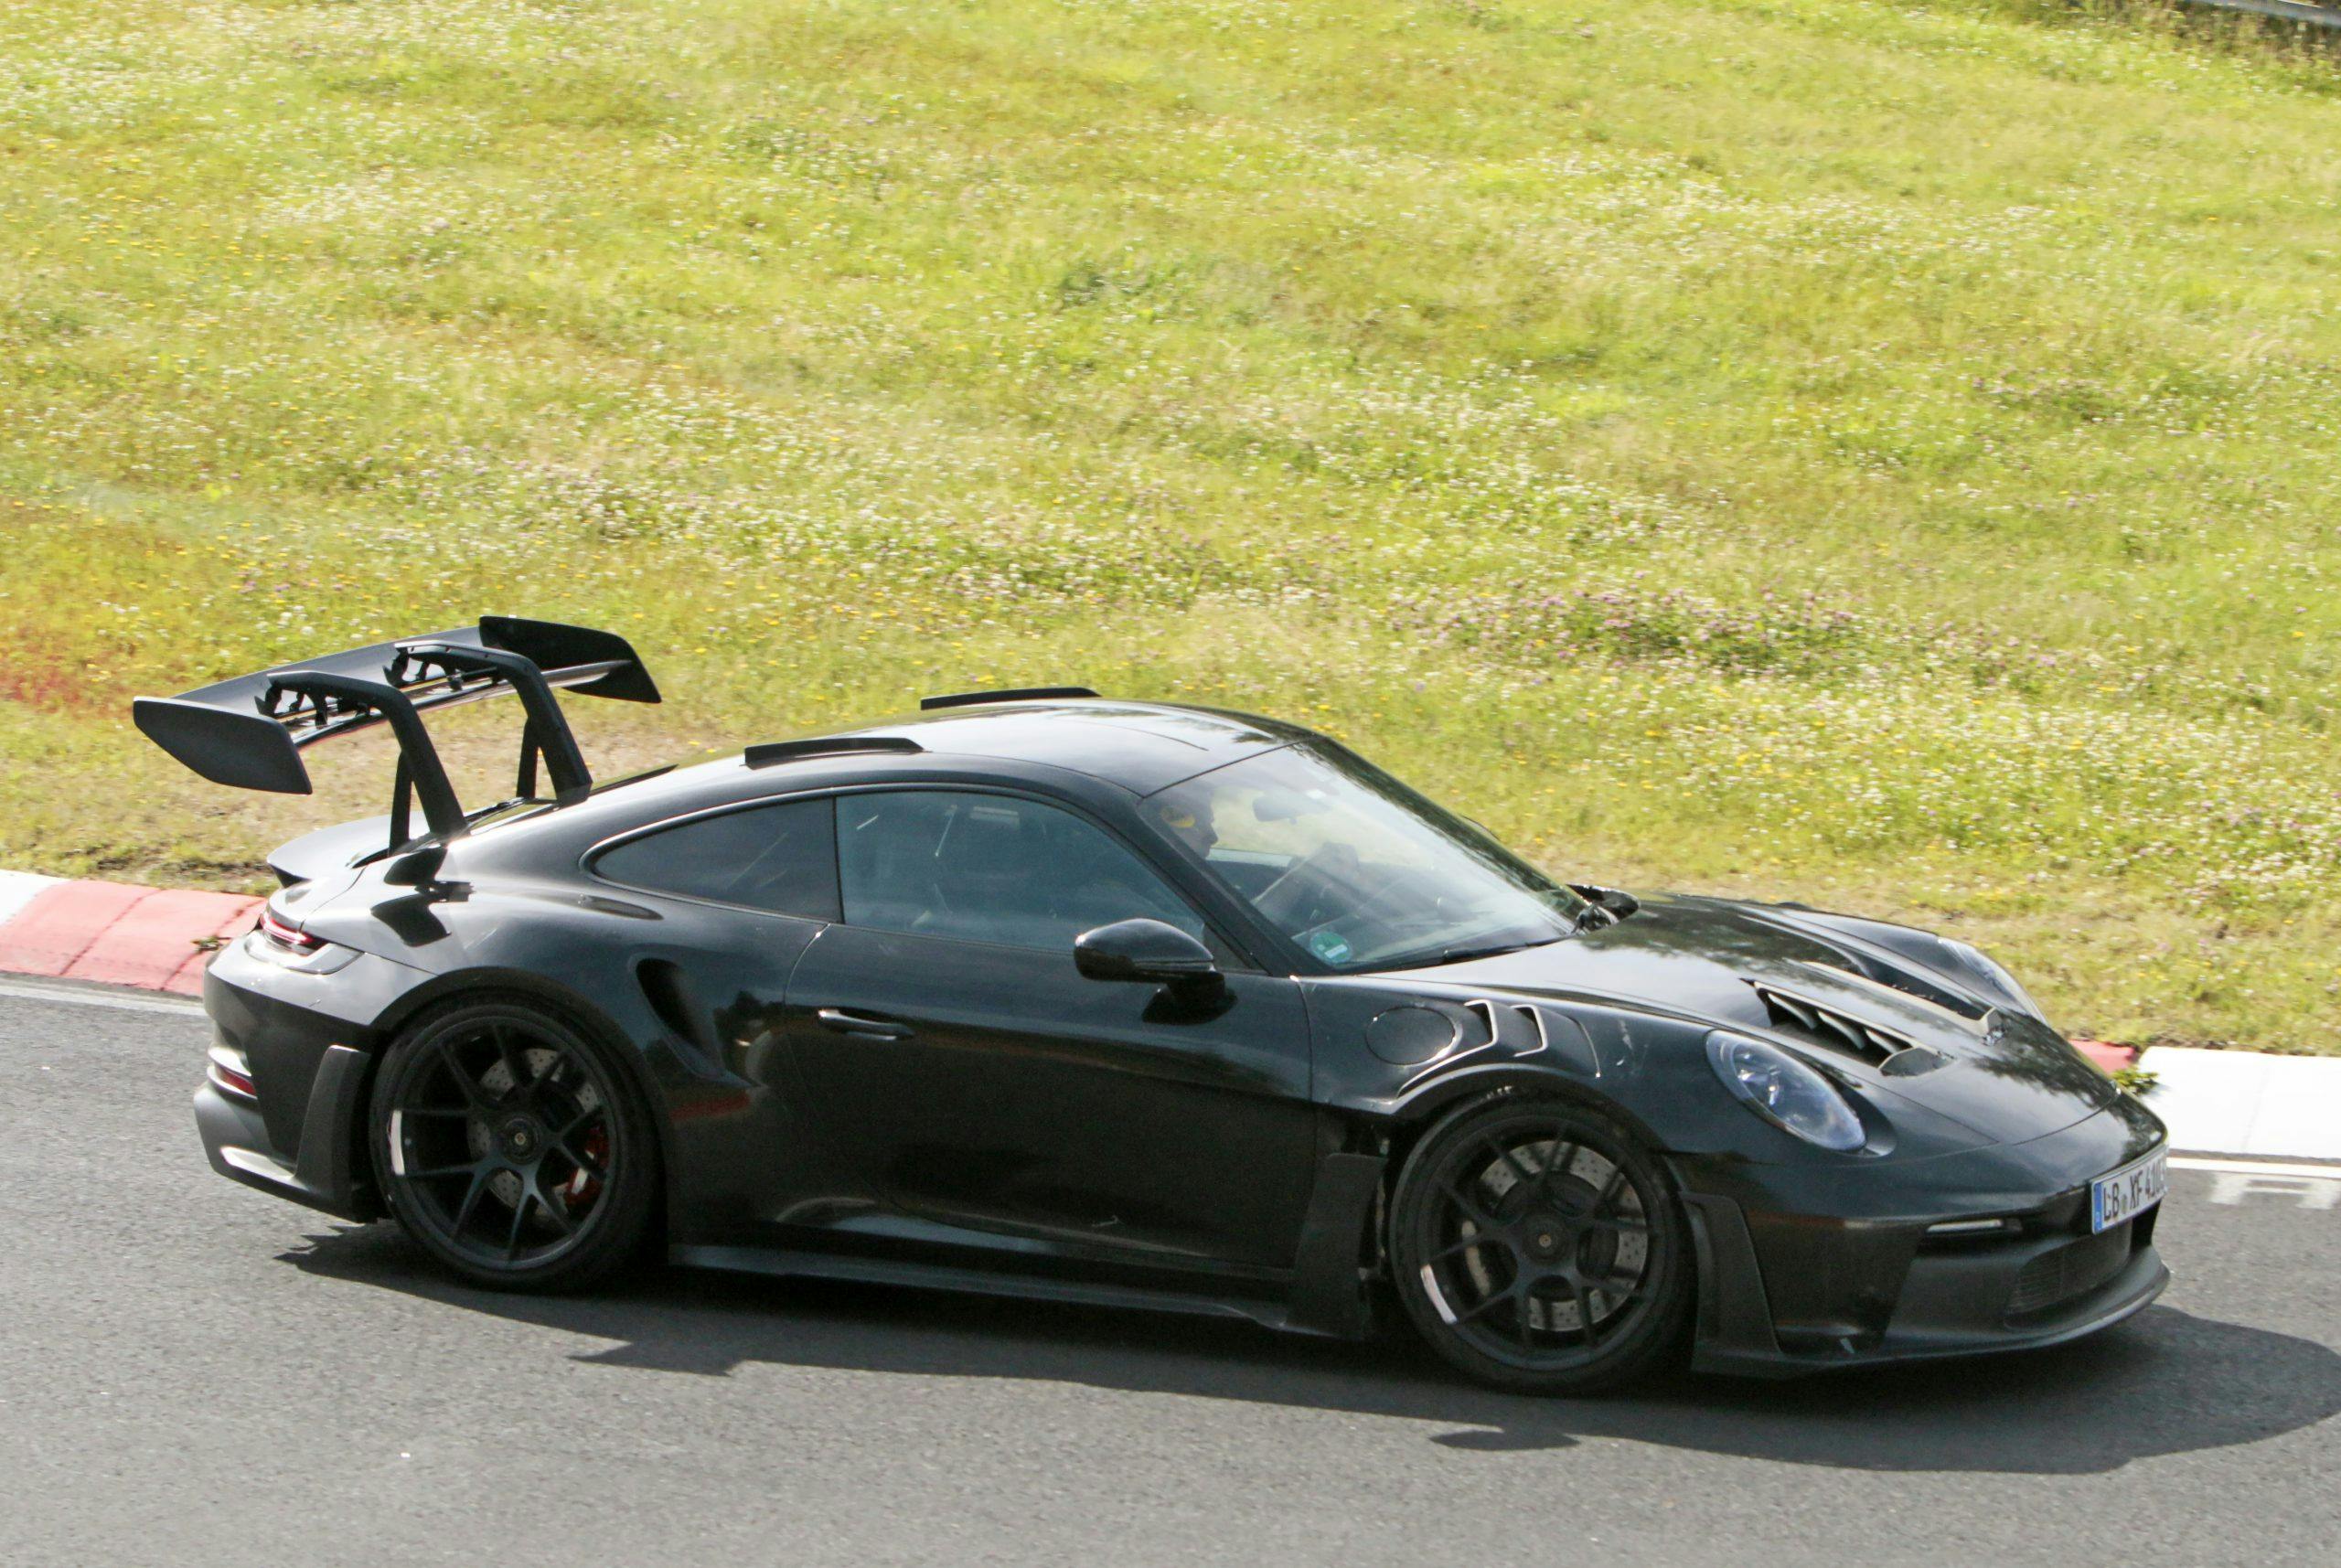 Porsche 911 GT3 RS Spy Shots exterior side profile